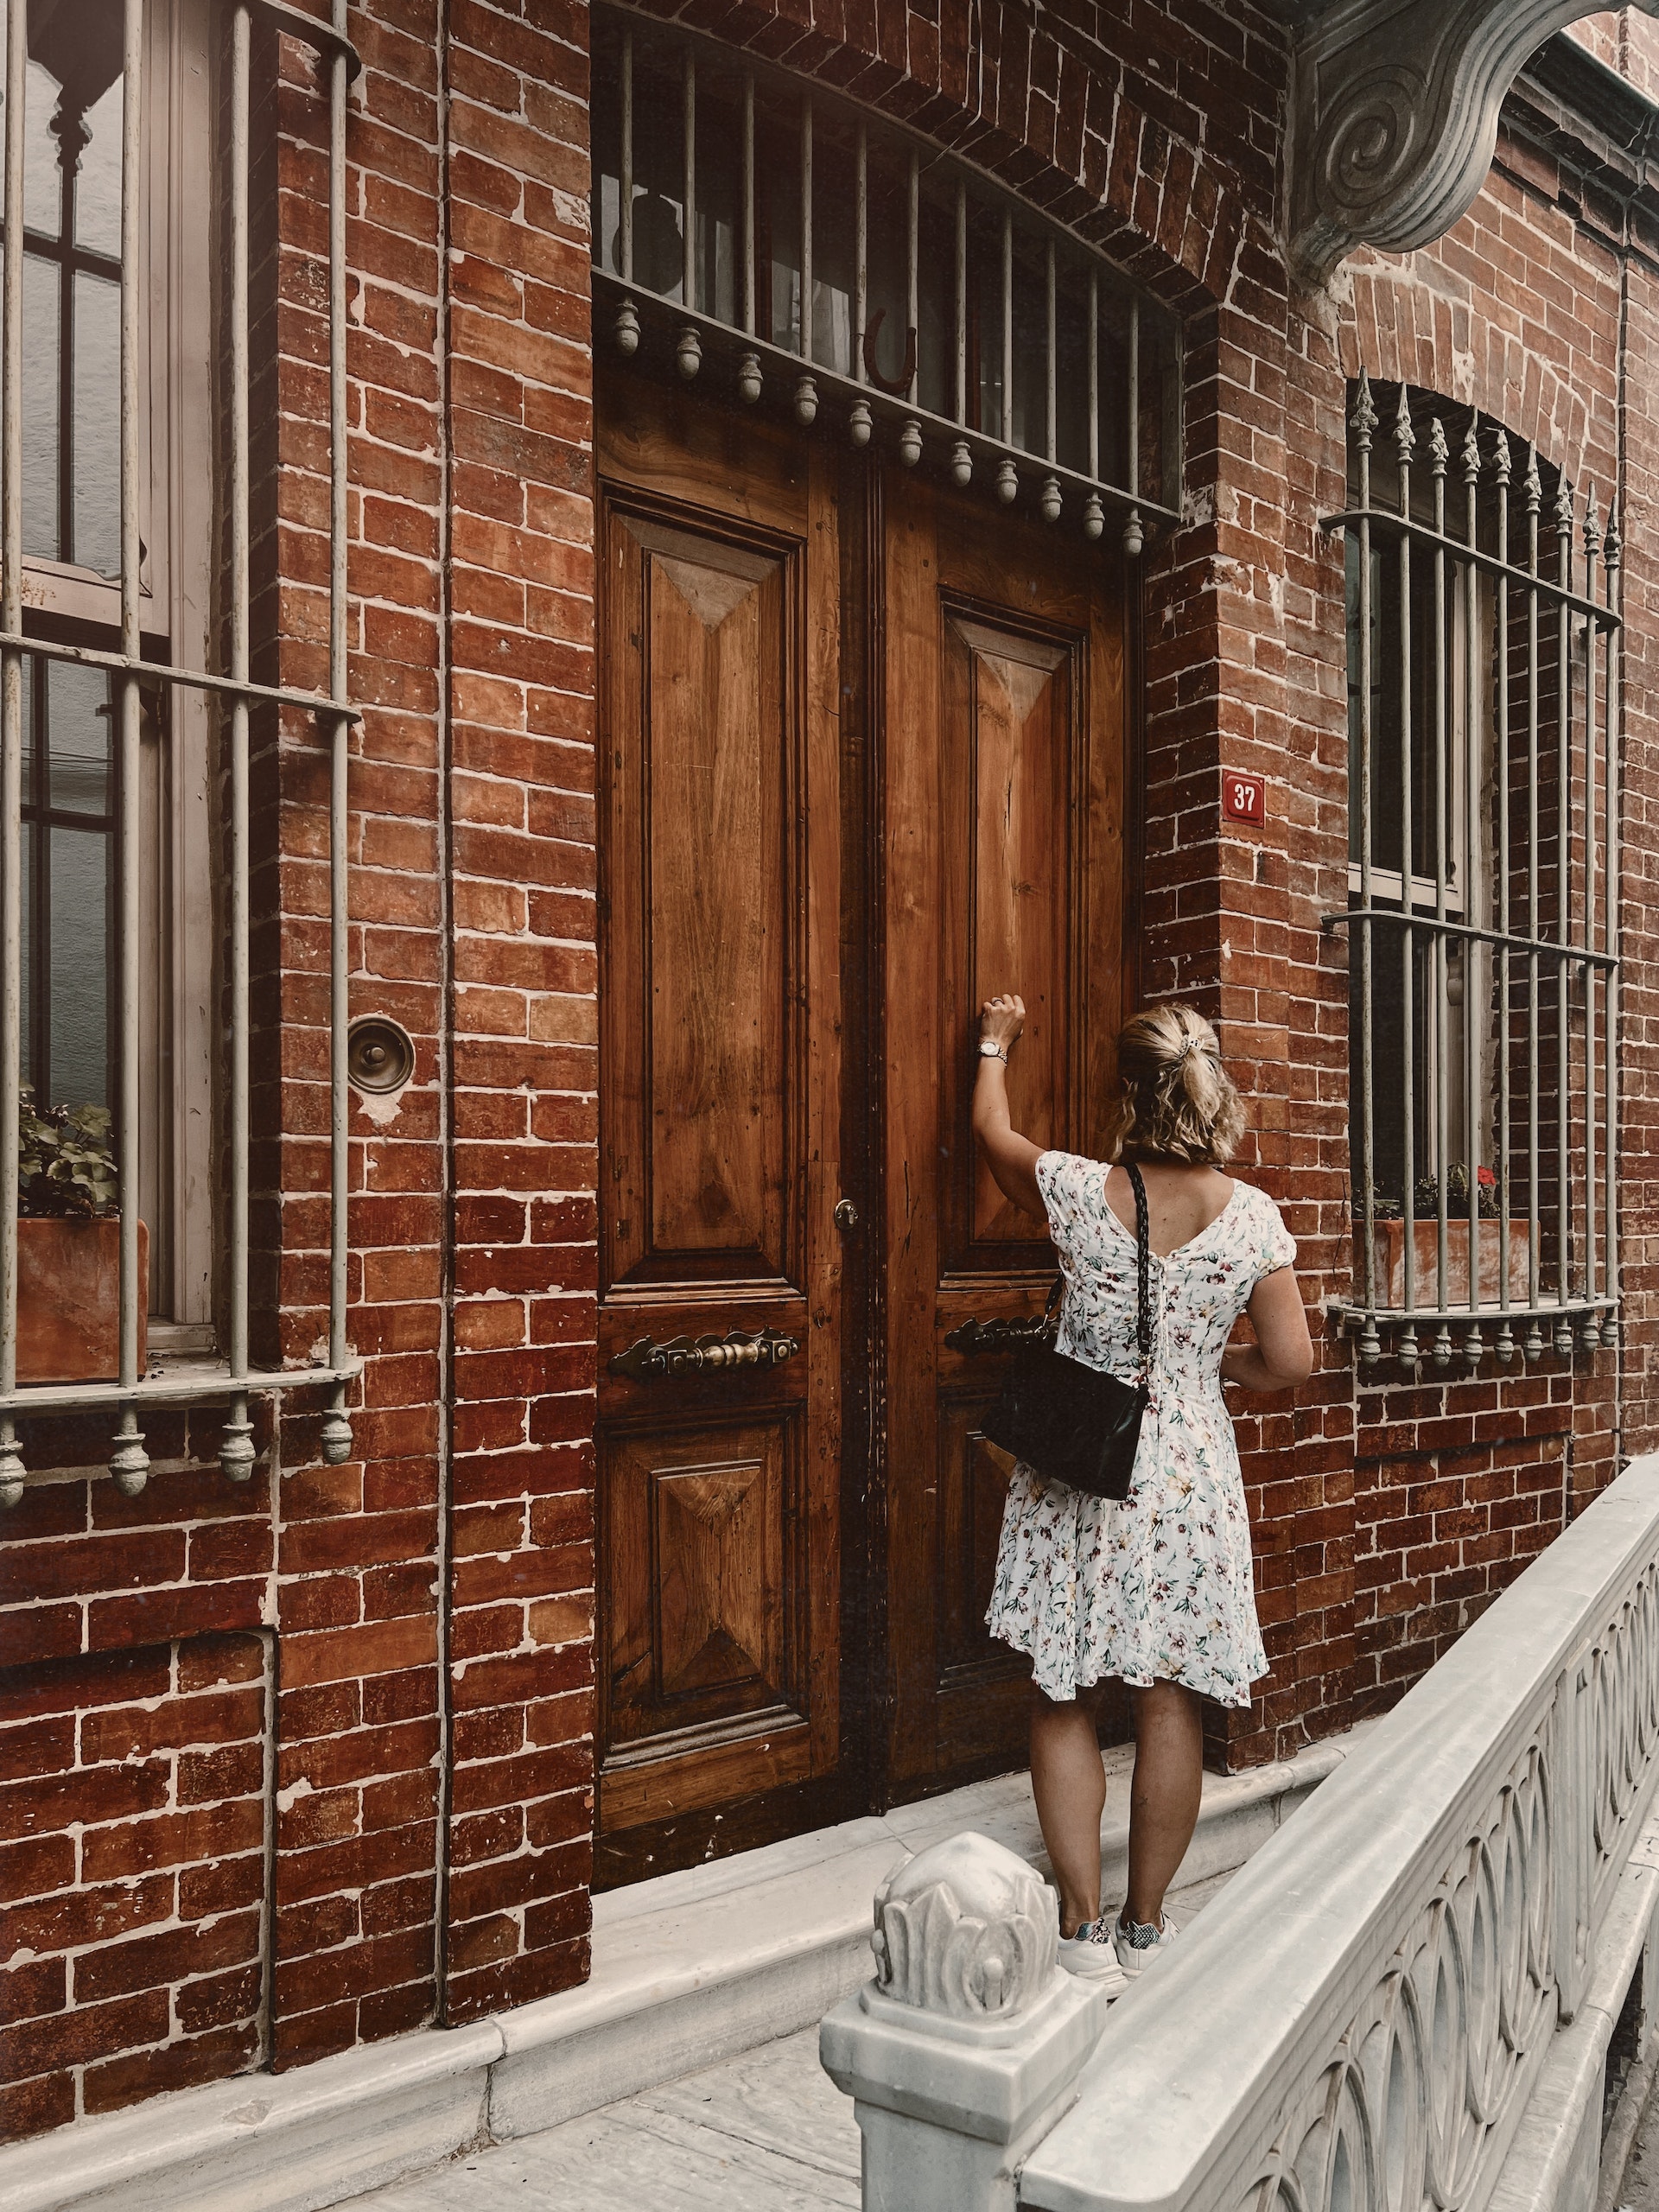 Une femme frappe à une porte en bois | Source : Pexels